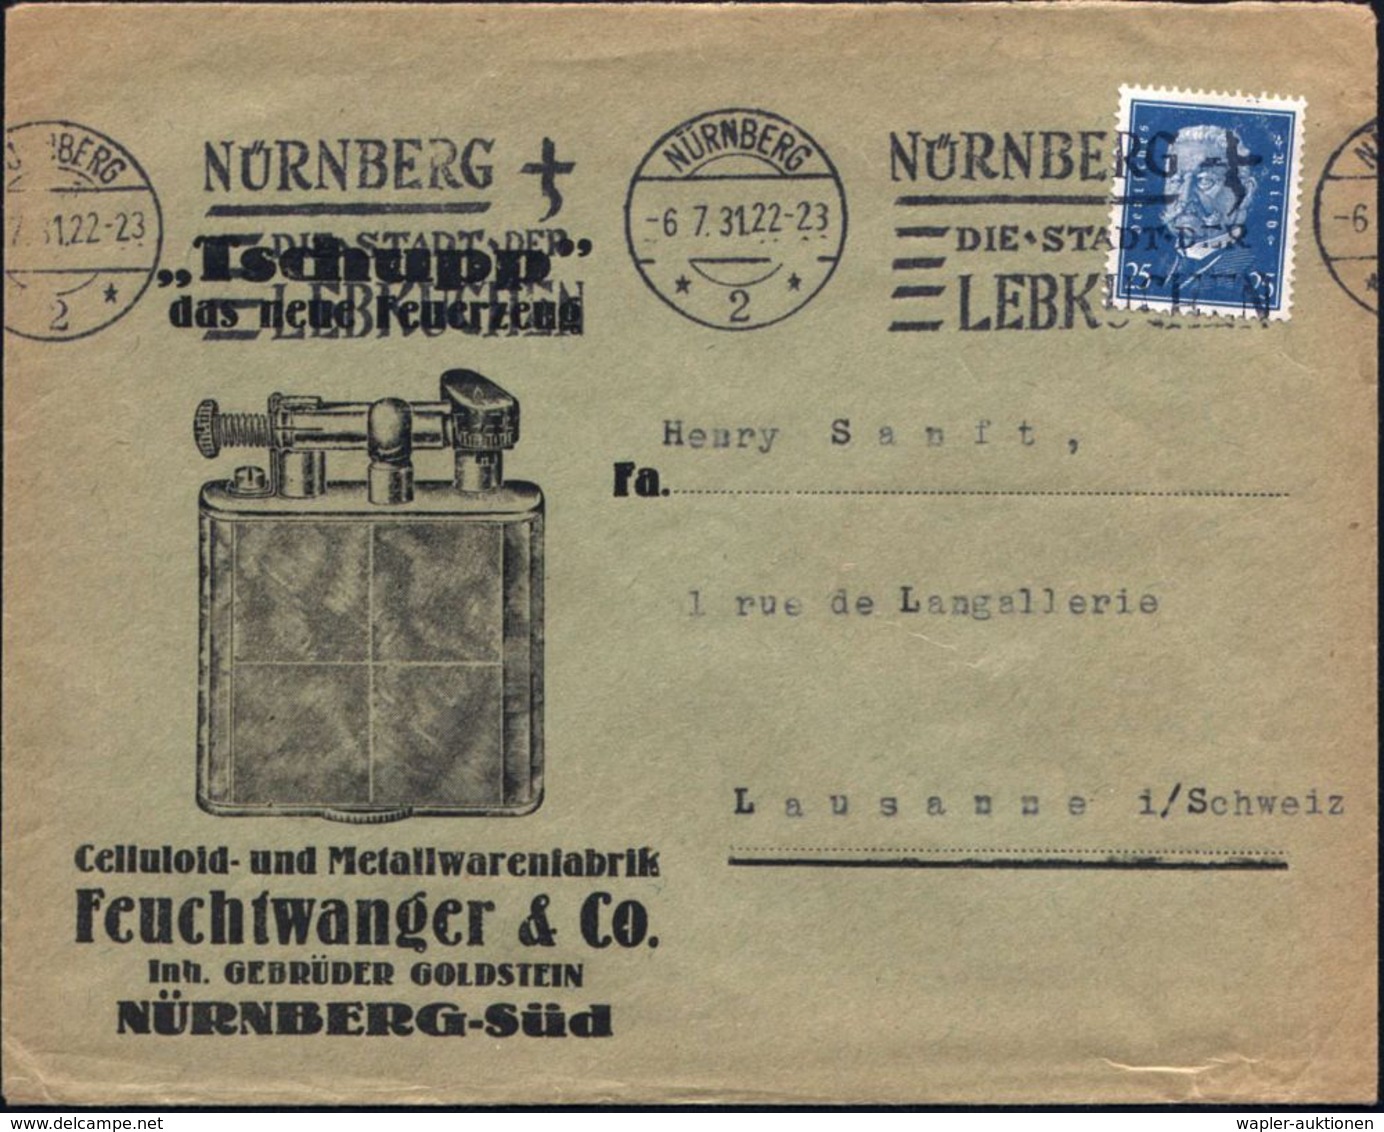 ZÜNDWAREN / PYROTECHNIK / FEUERWERK : NÜRNBERG/ *2*/ DIE STADT DER/ LEBKUCHEN 1931 (6.7.) MWSt Auf Reklame-Bf.: "Tschupp - Sapeurs-Pompiers